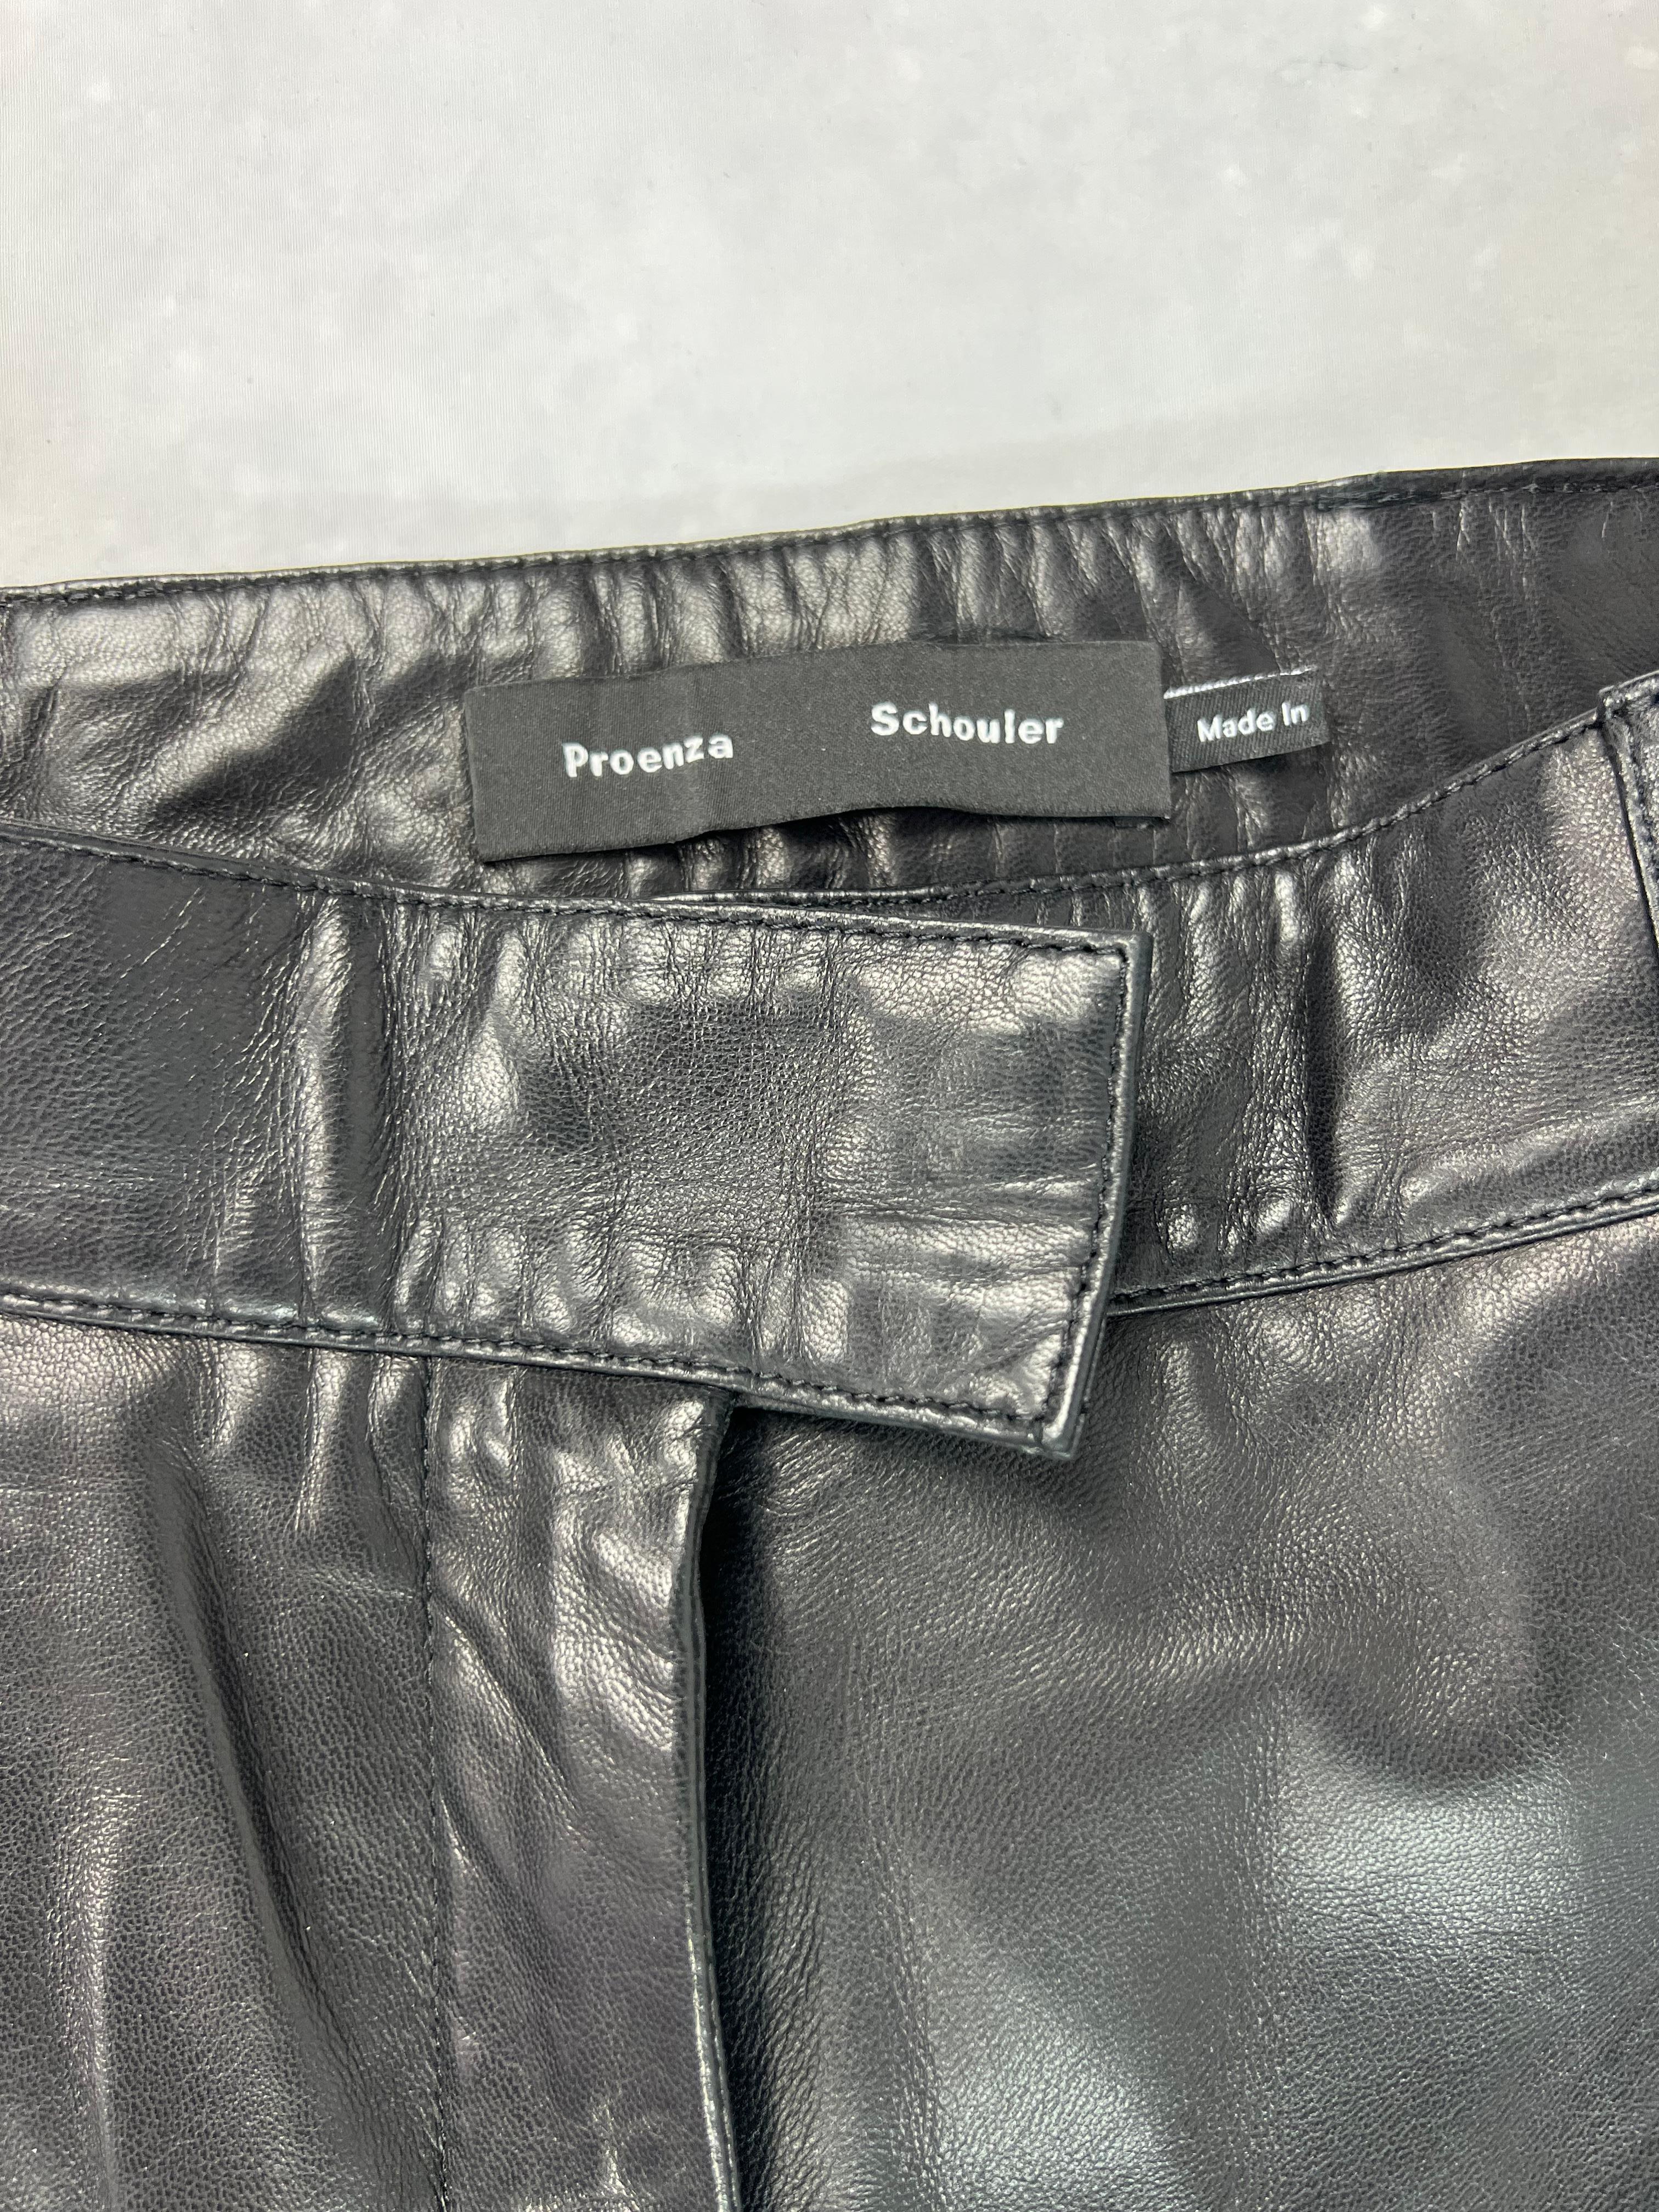 Einzelheiten zum Produkt:

Die Hose ist aus 100% Lammfell gefertigt. Es hat eine hochgezogene Taille, einen Schnürverschluss am unteren Ende und Seitentaschen.